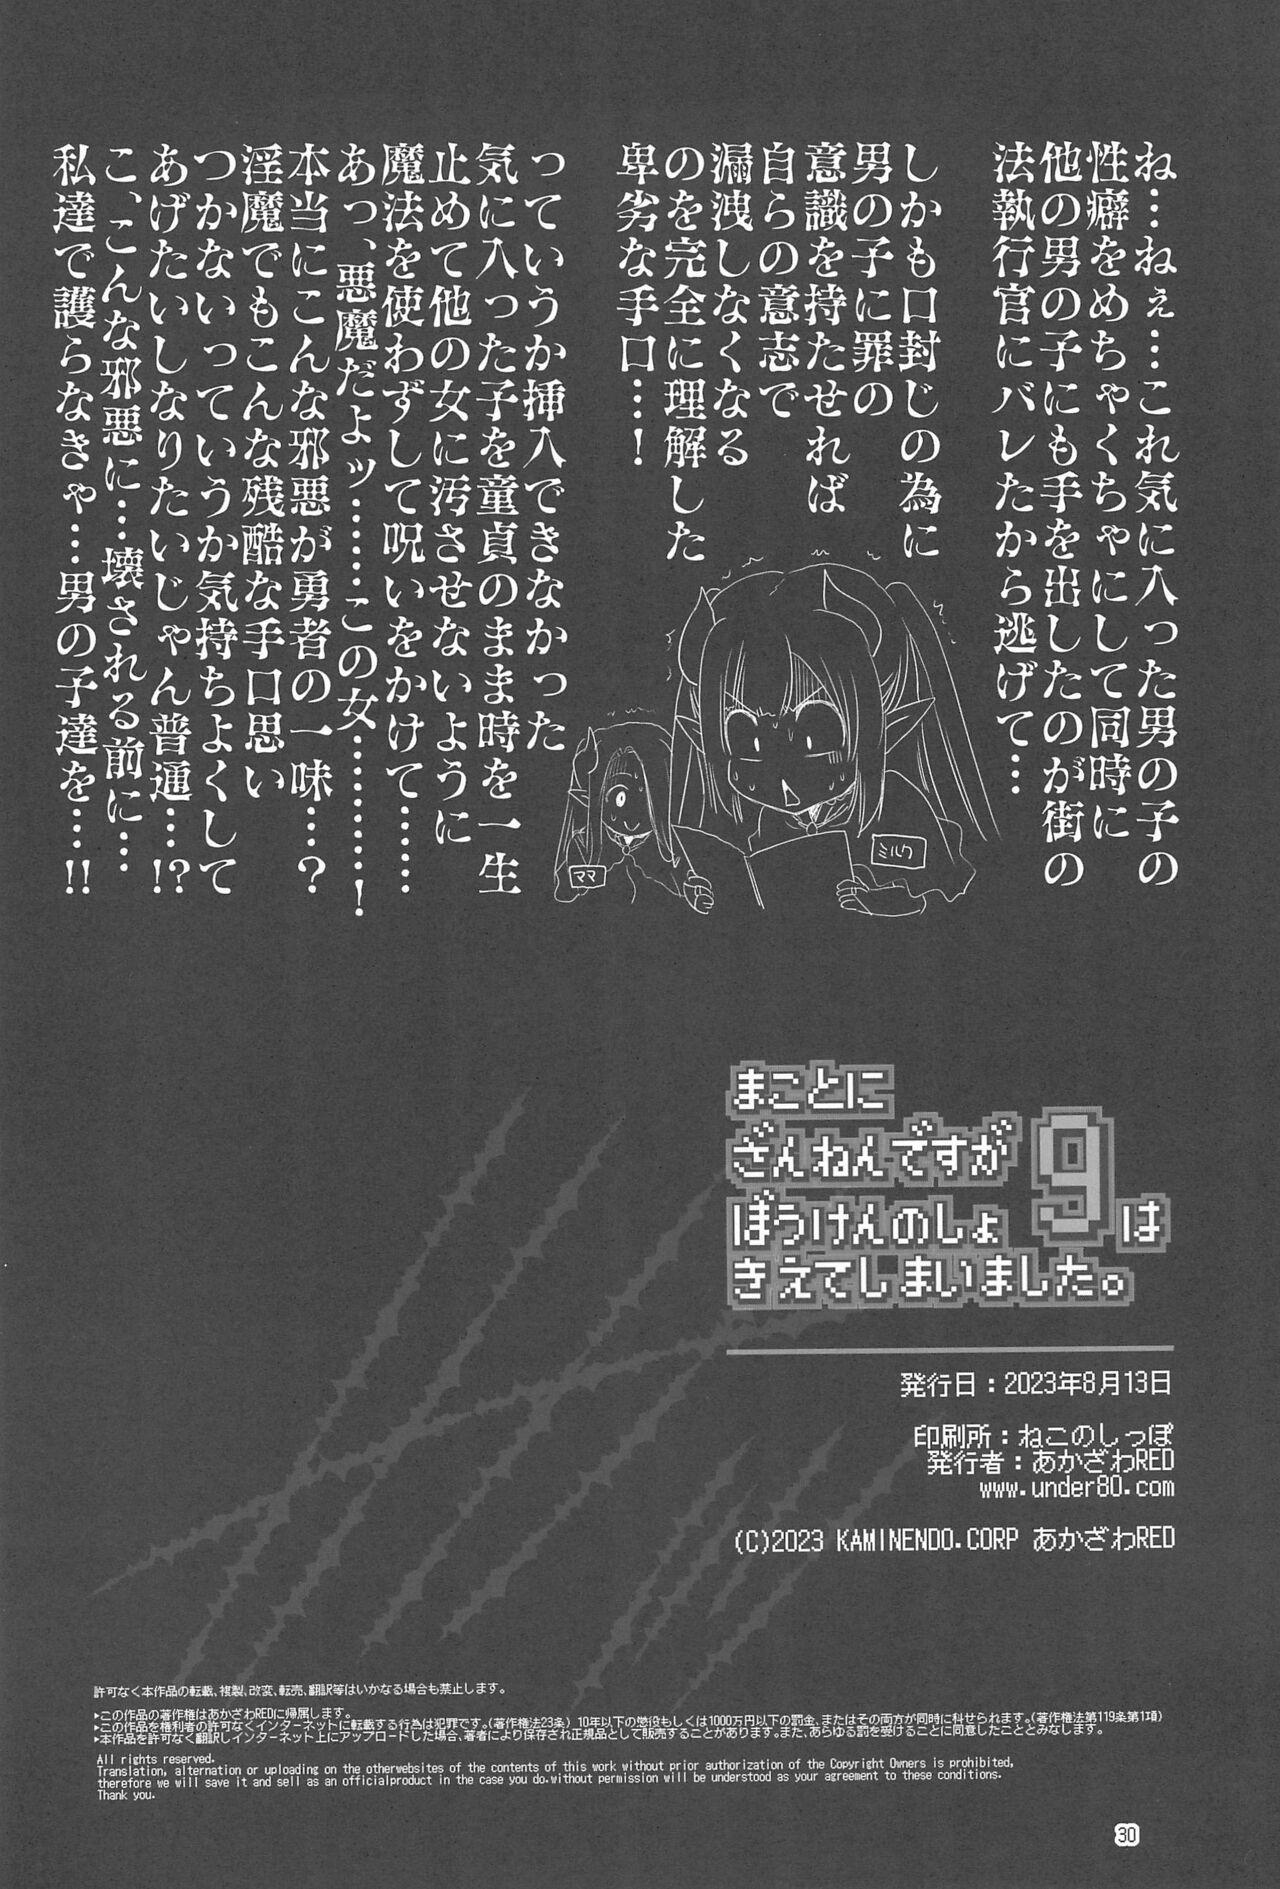 Makotoni Zannen desu ga Bouken no Sho 9 wa Kiete Shimaimashita. 29